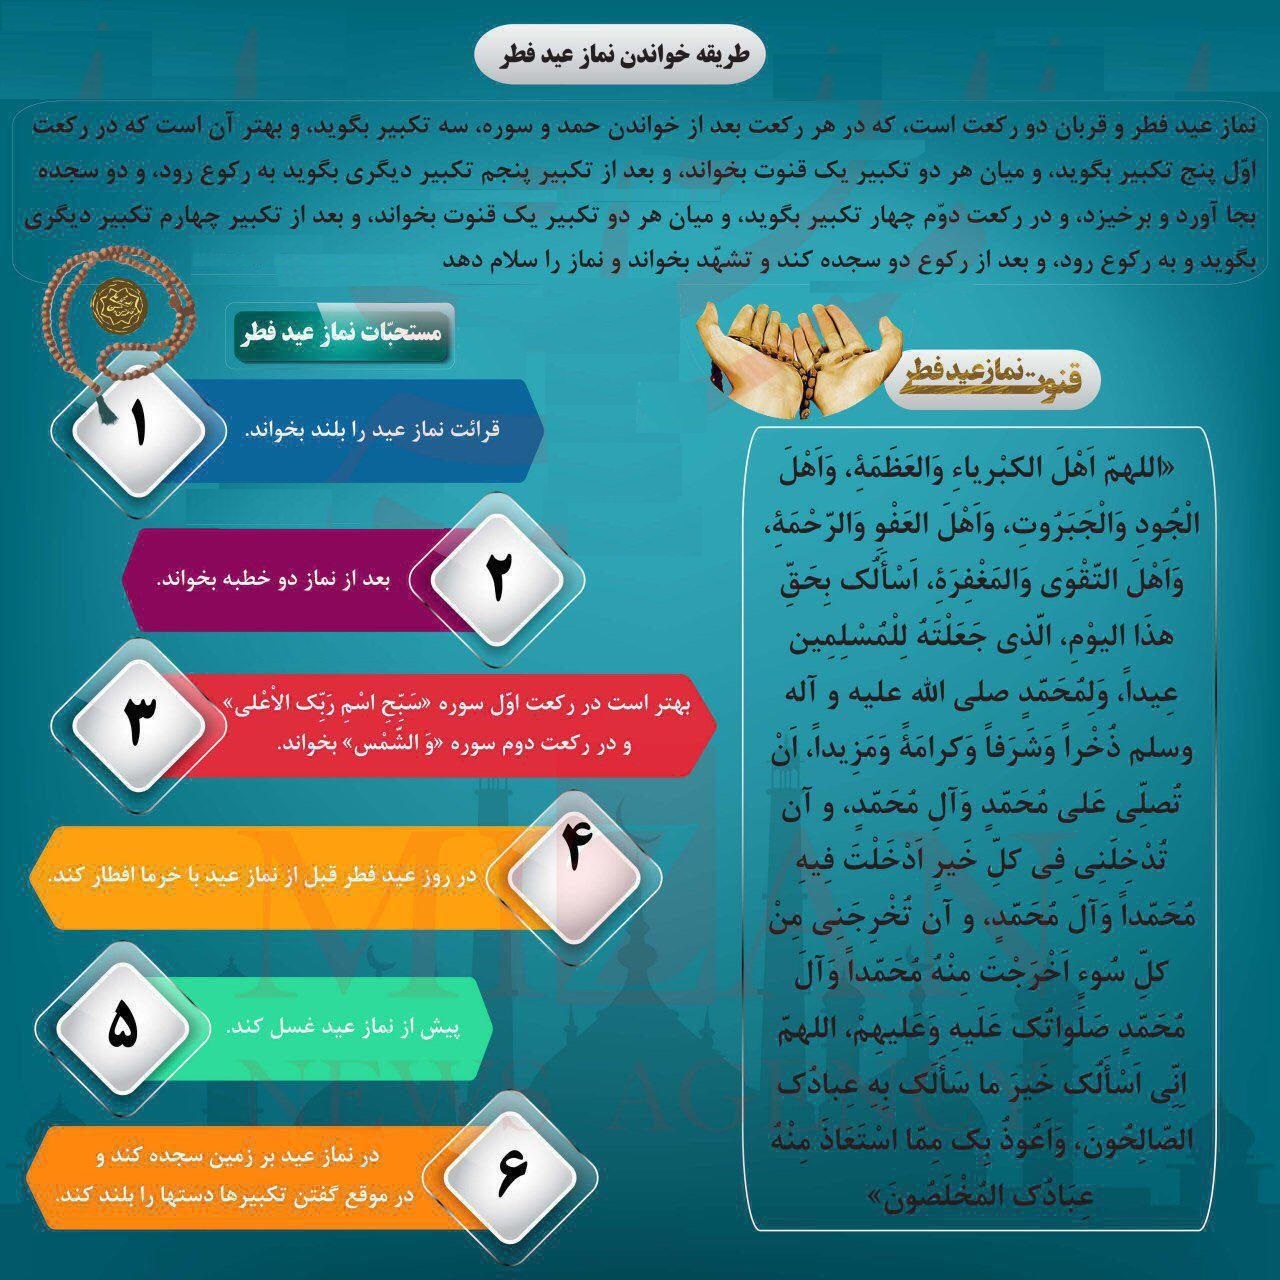 6 عمل مستحبی روز عید فطر +اینفوگرافی